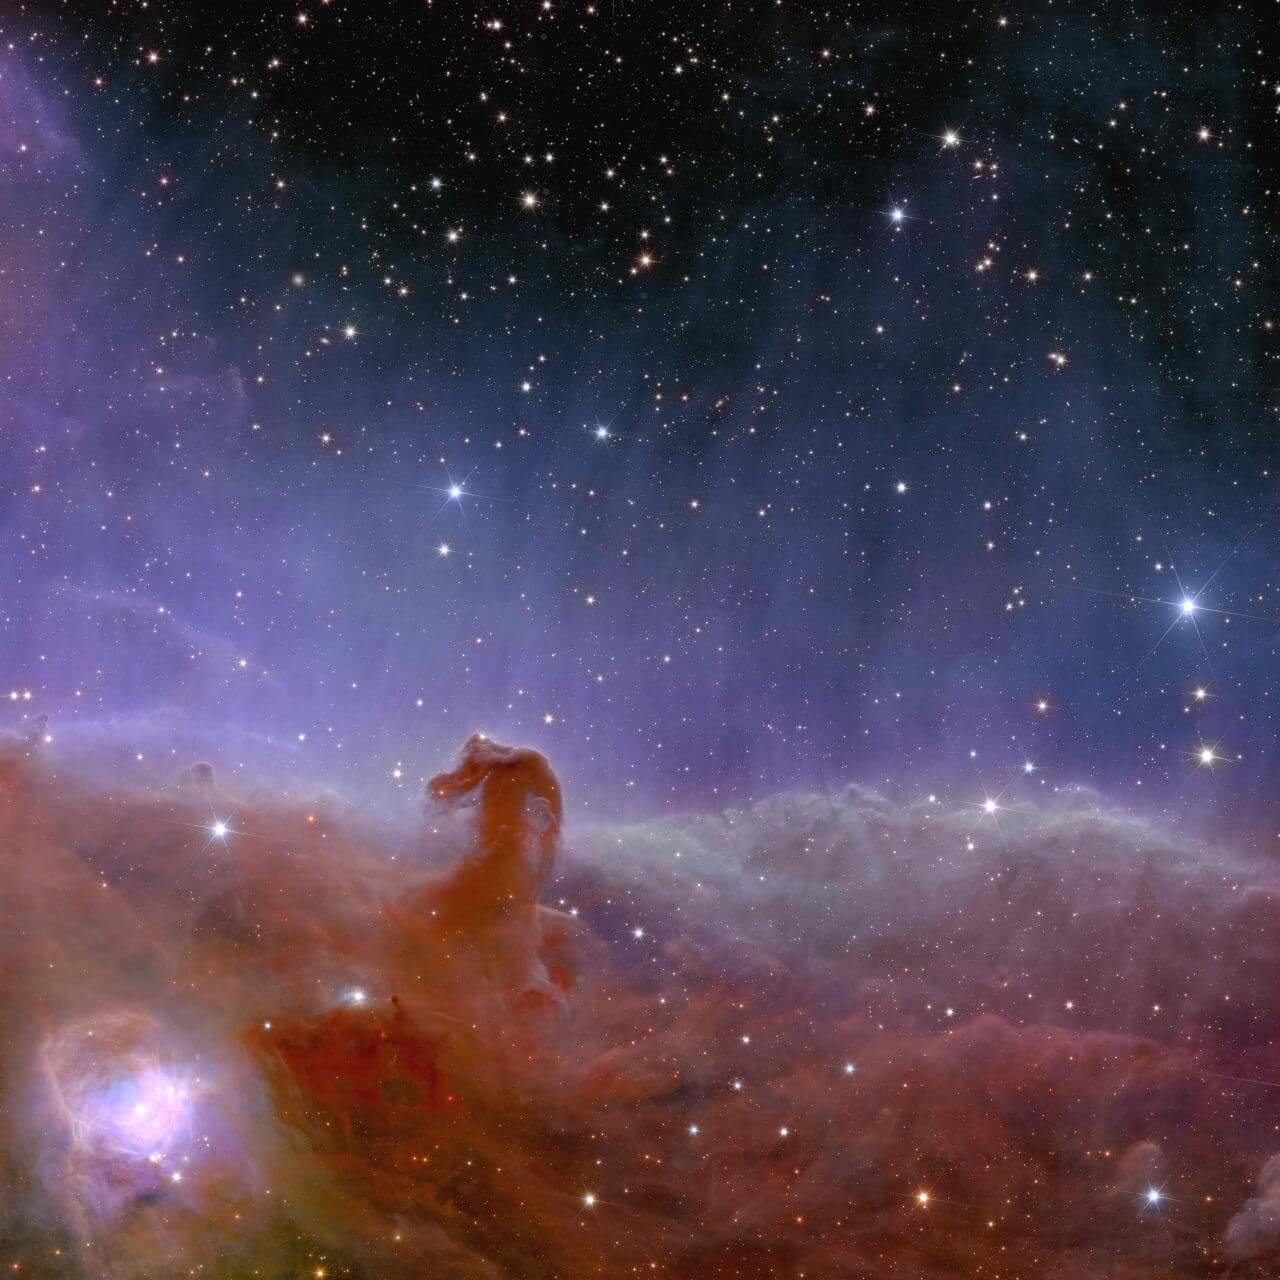 ESAのユークリッド宇宙望遠鏡が撮影したオリオン座の「馬頭星雲」